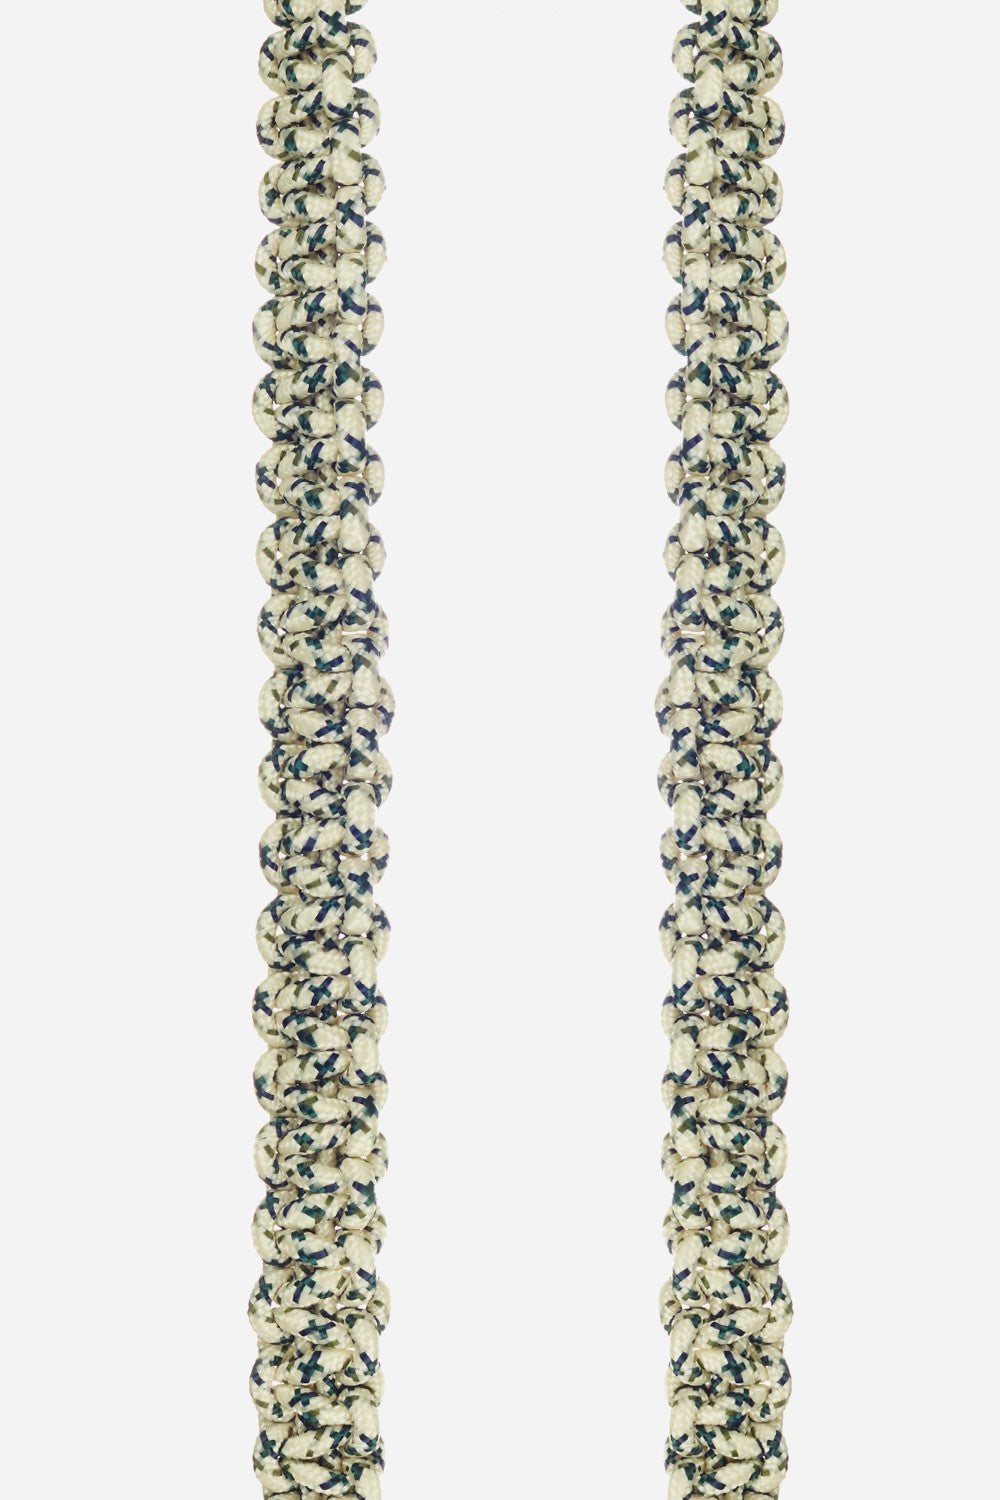 Long James Beige Chain 120 cm